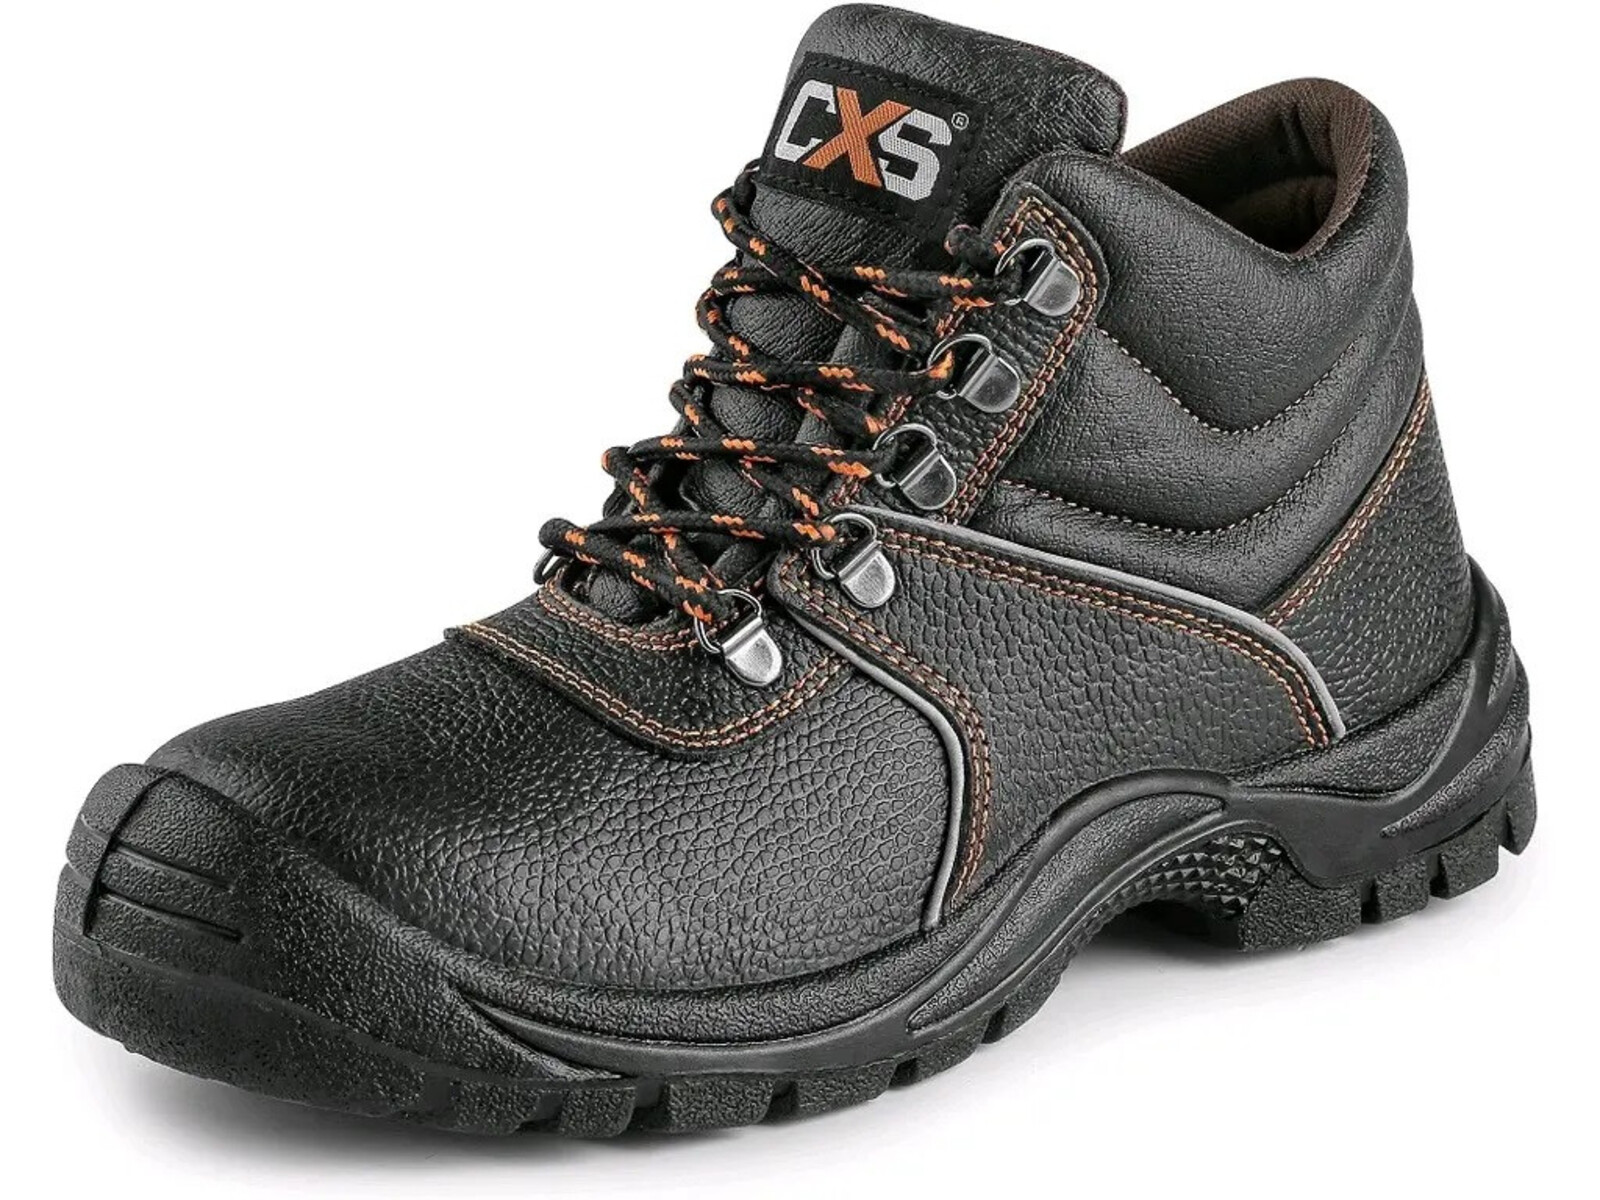 Bezpečnostná členková obuv CXS Stone Marble S3 SRC - veľkosť: 35, farba: čierna/oranžová